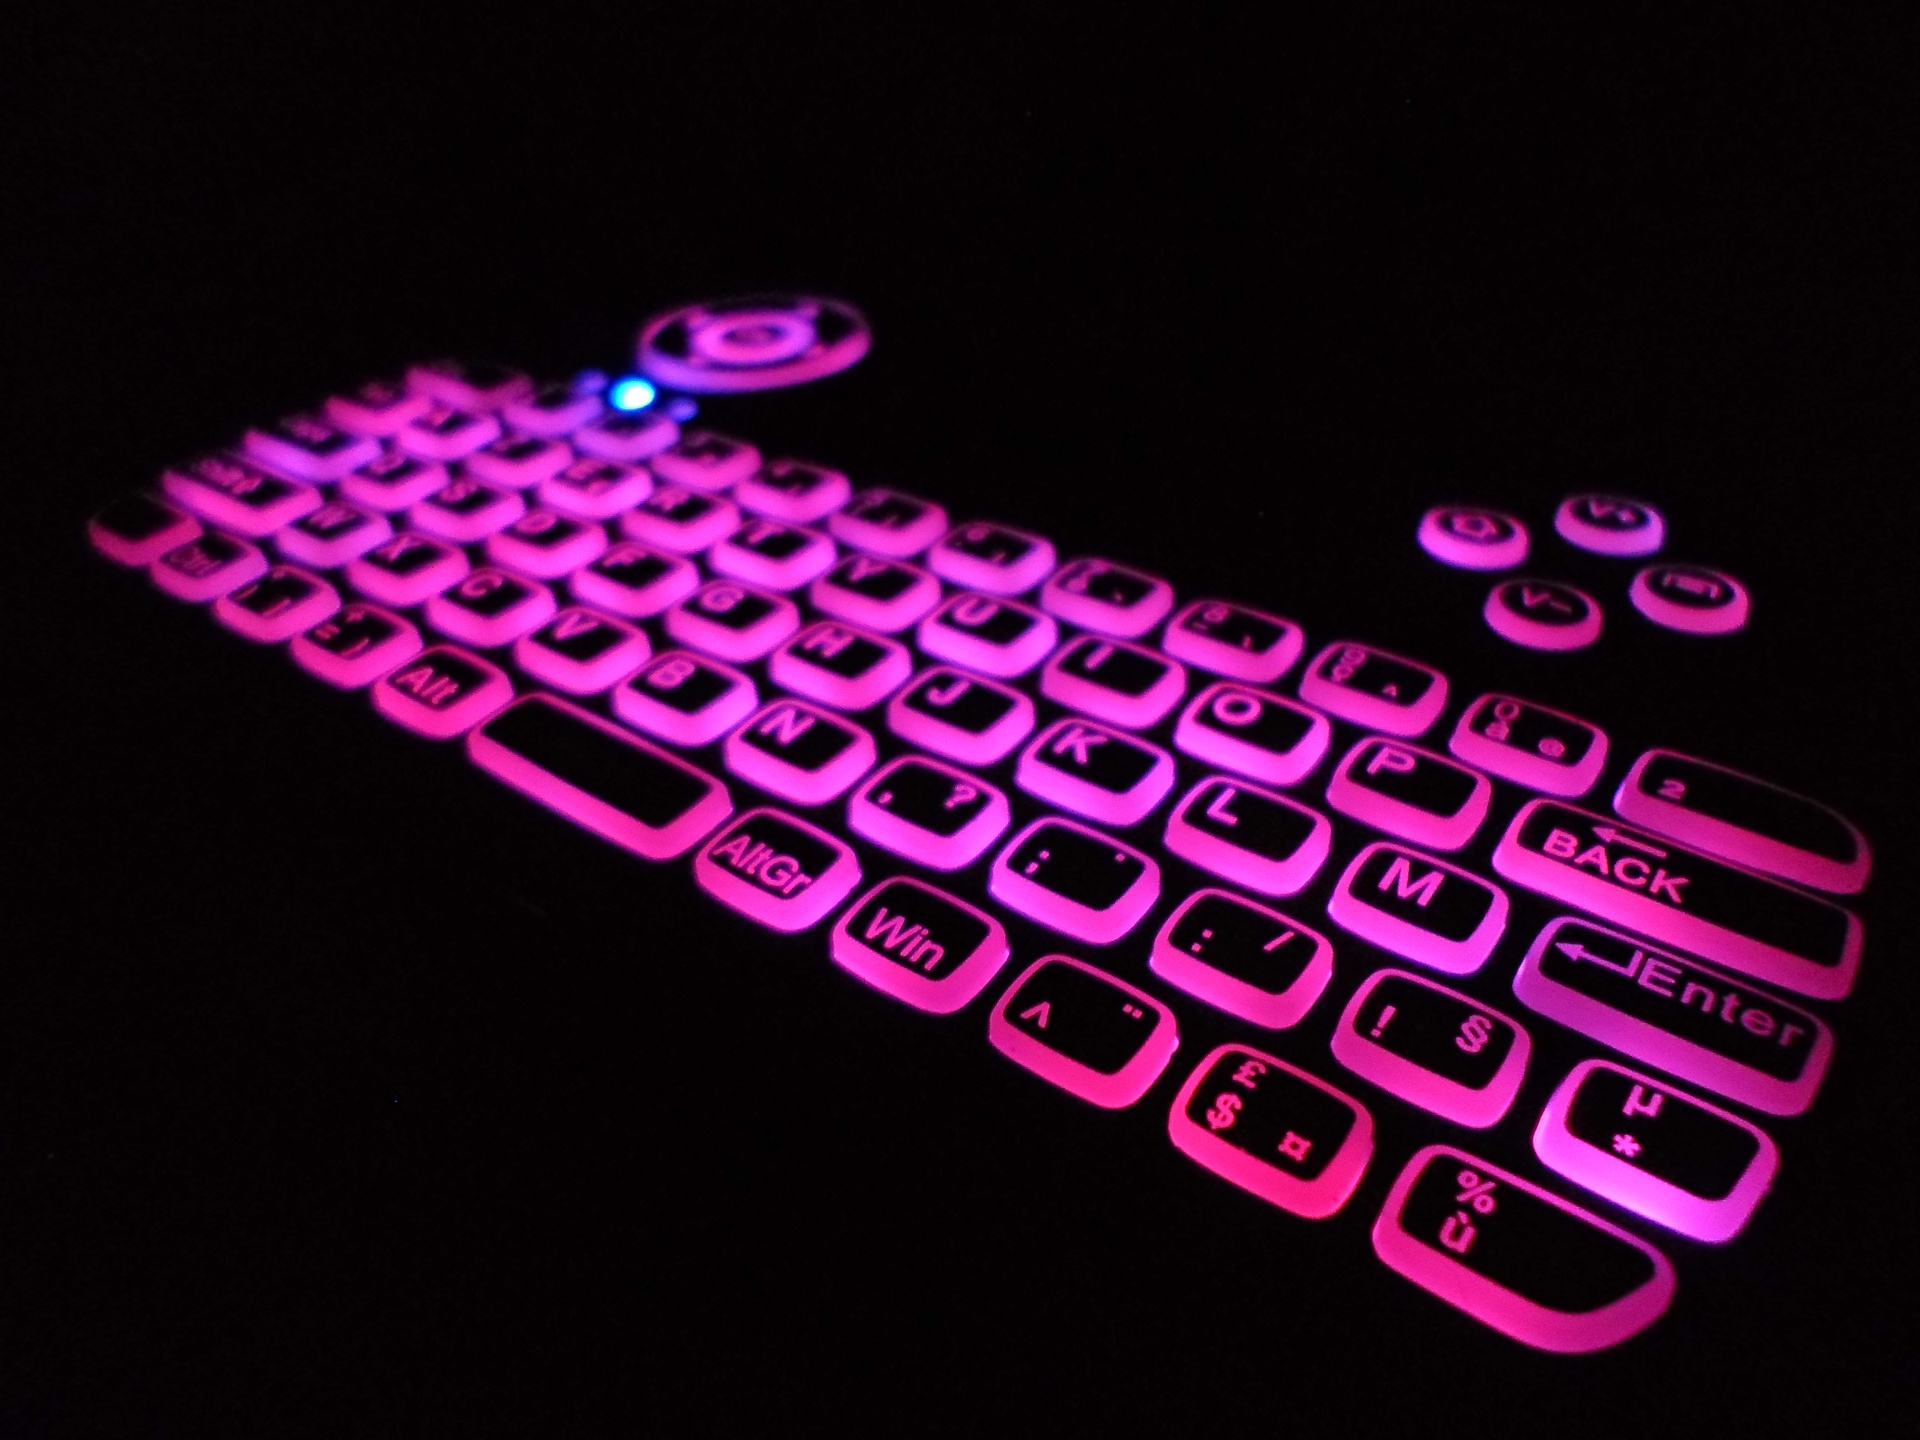 紫色背光阿泽蒂键盘